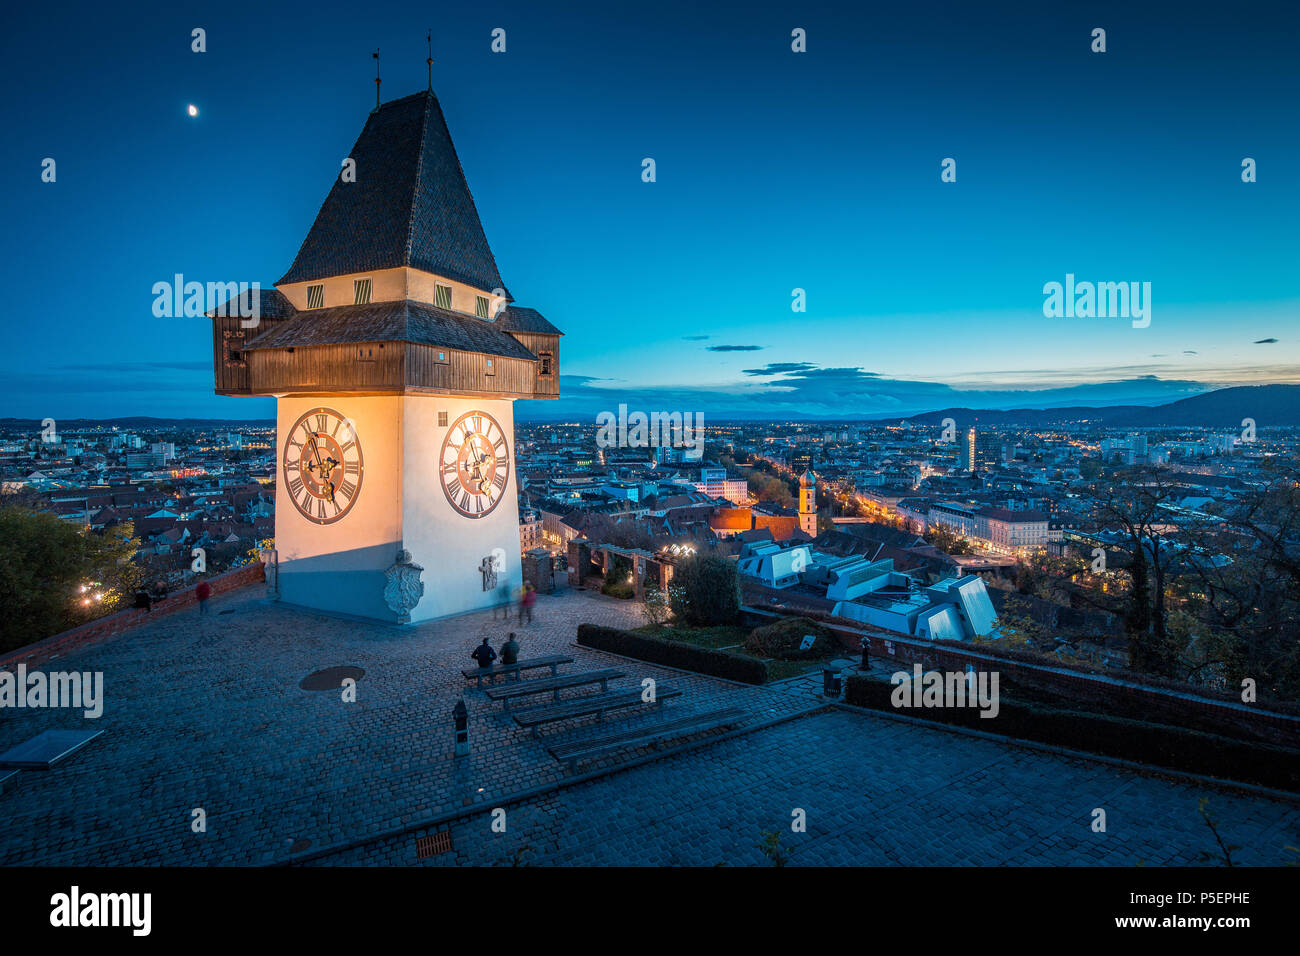 Schöne Dämmerung Blick auf berühmte Grazer Uhrturm (Uhrturm) während der Blauen Stunde in der Dämmerung, Graz, Steiermark, Österreich Stockfoto